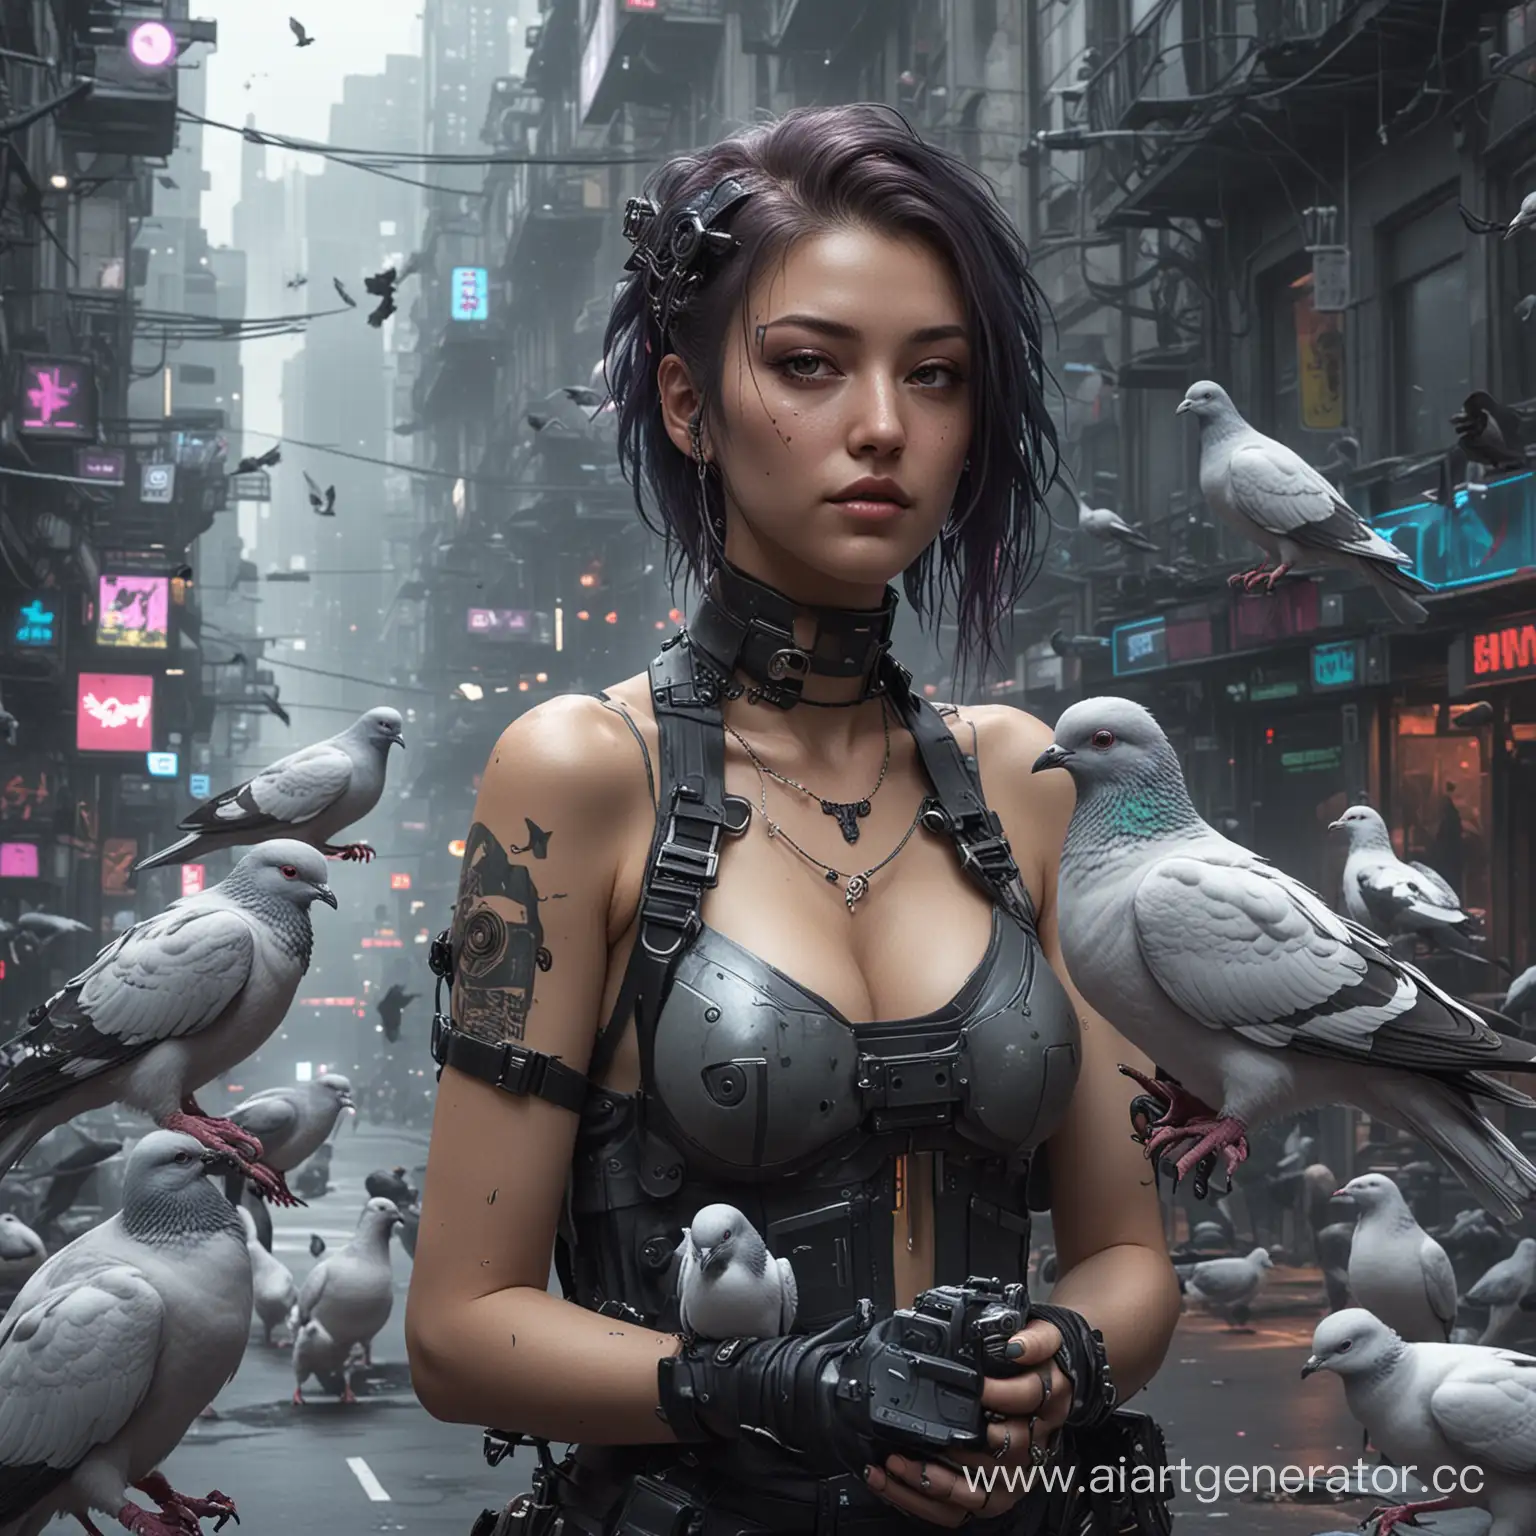 Futuristic-Love-Cyberpunk-Couple-Embracing-Among-Pigeons